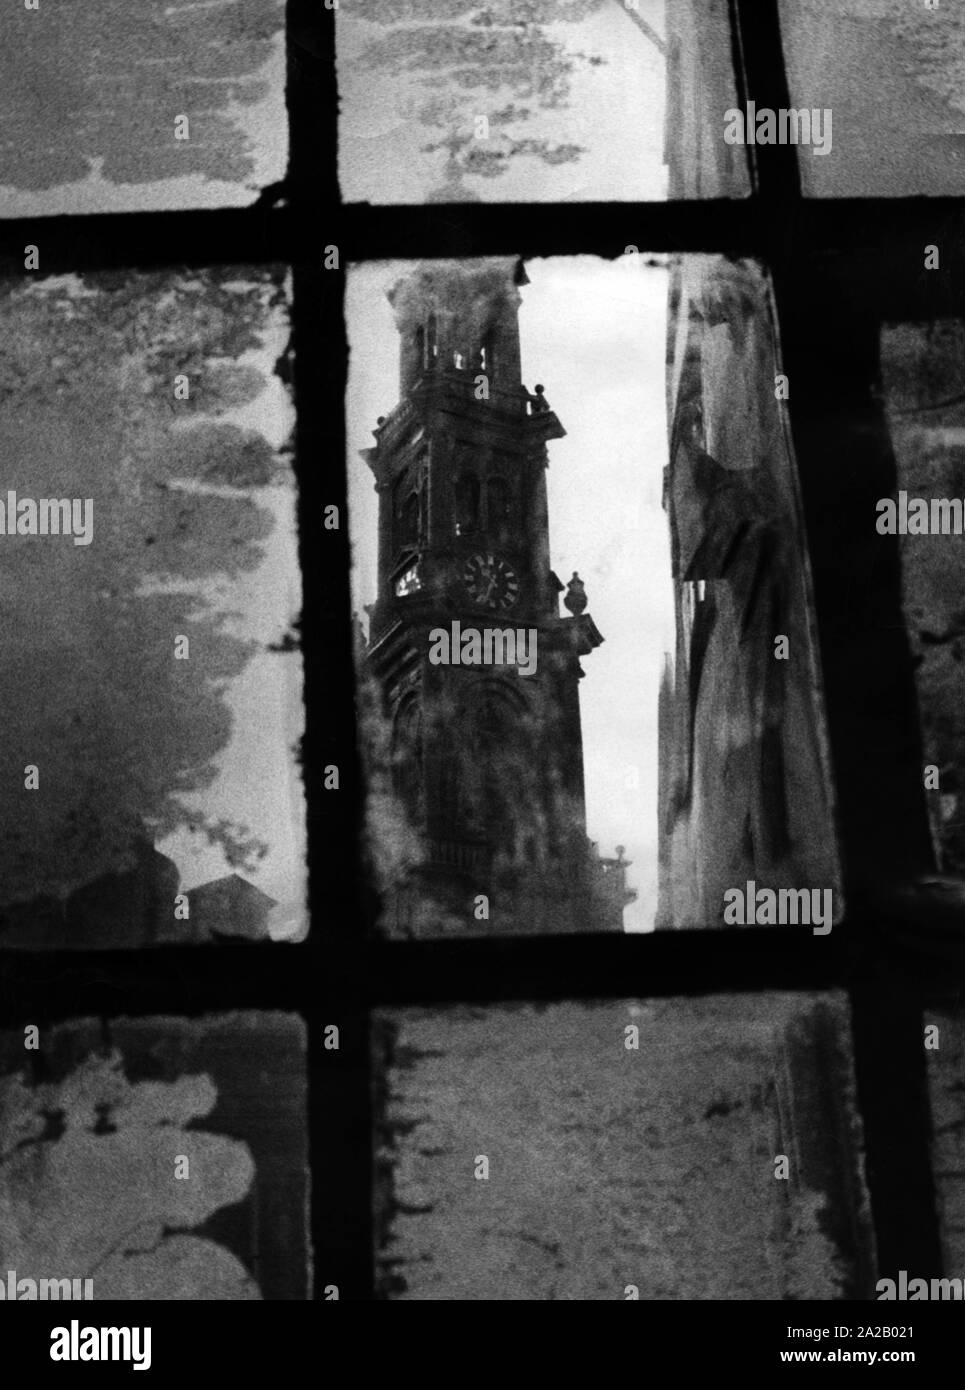 Der westerturm ist in ein Fenster des Anne Frank Hauses wider. Hinter diesem Fenster in einem Hinterhof der Amsterdam Prinsengracht, wo Anne Frank und ihrer Familie sowie der Familie van Pels und Fritz Pfeffer, versteckt von der Gestapo. Stockfoto